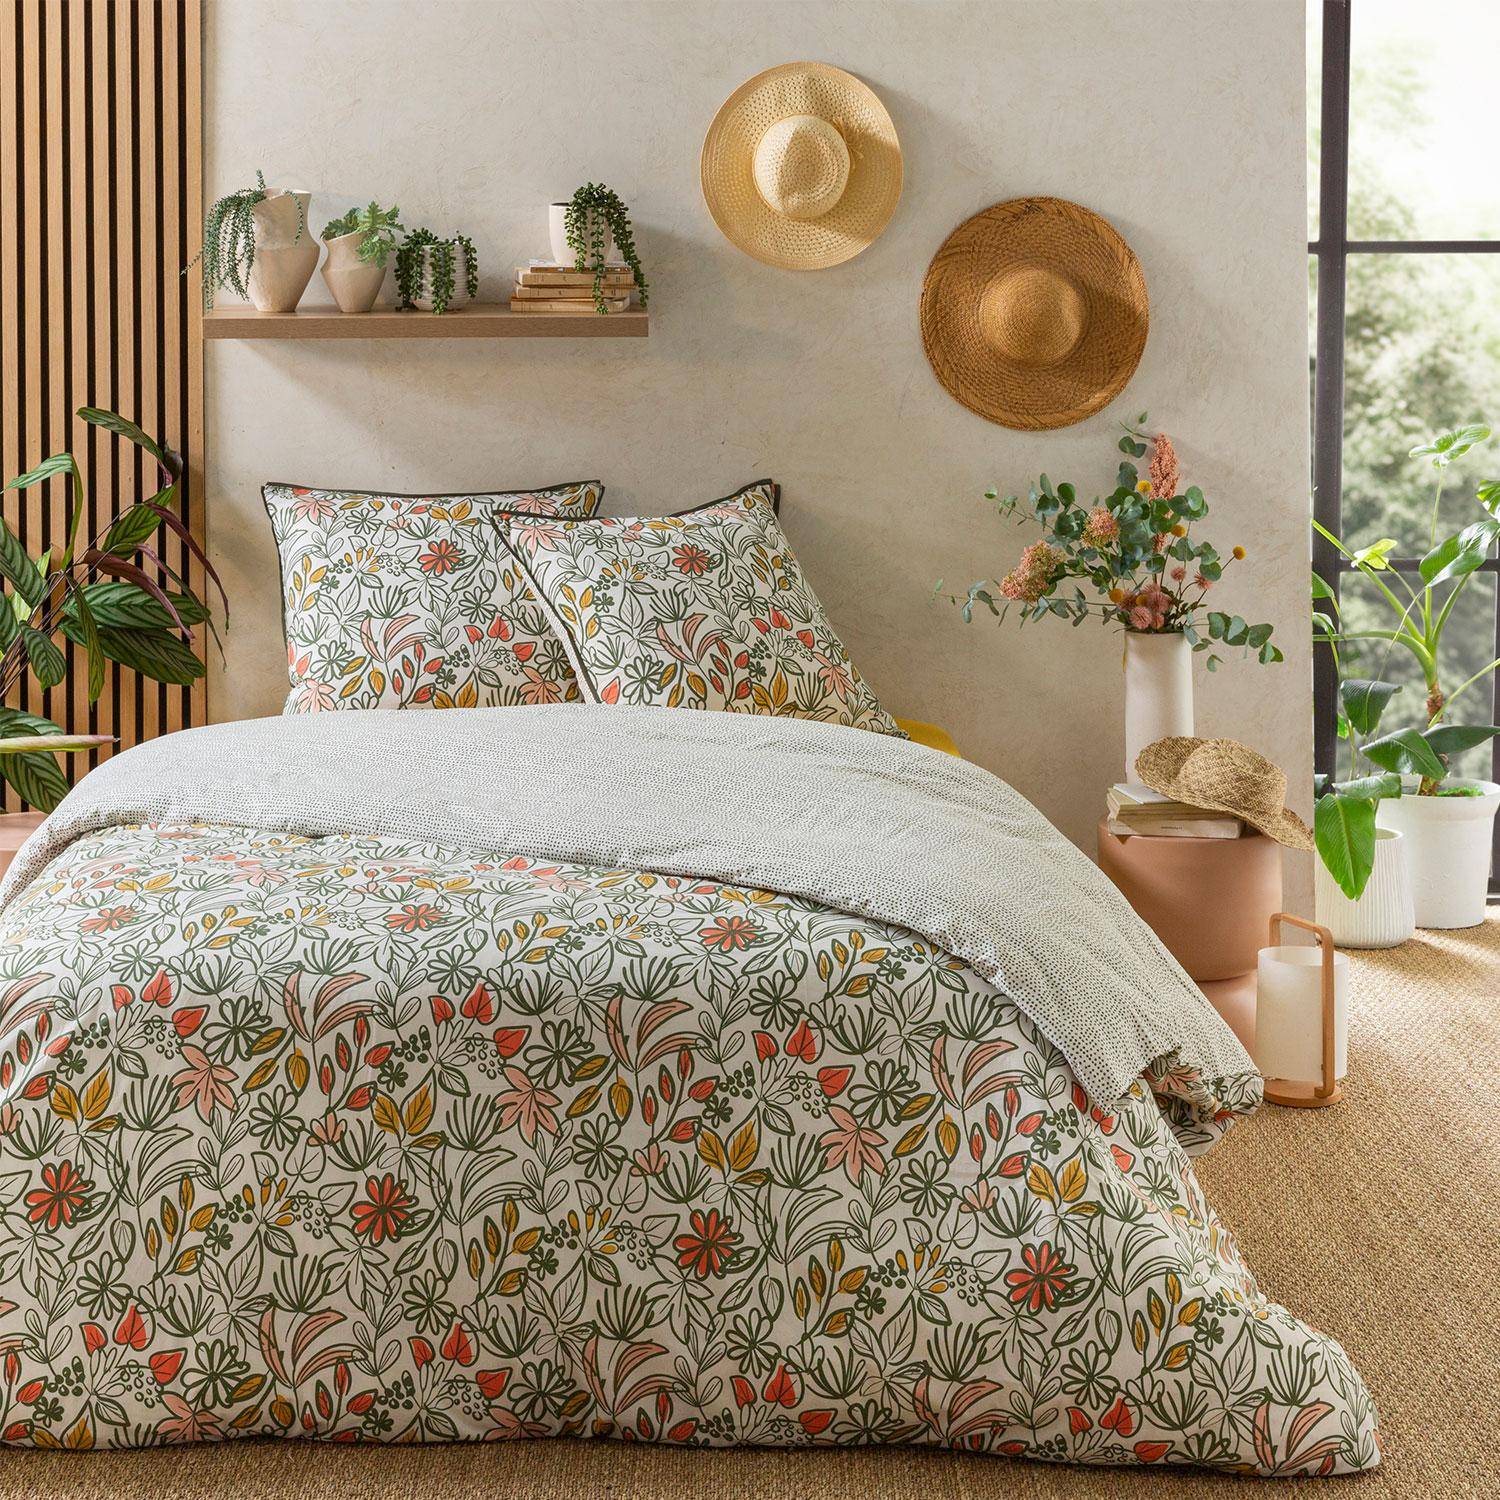 Parure de lit réversible 260x240cm imprimé floral multicolore en coton  Photo1